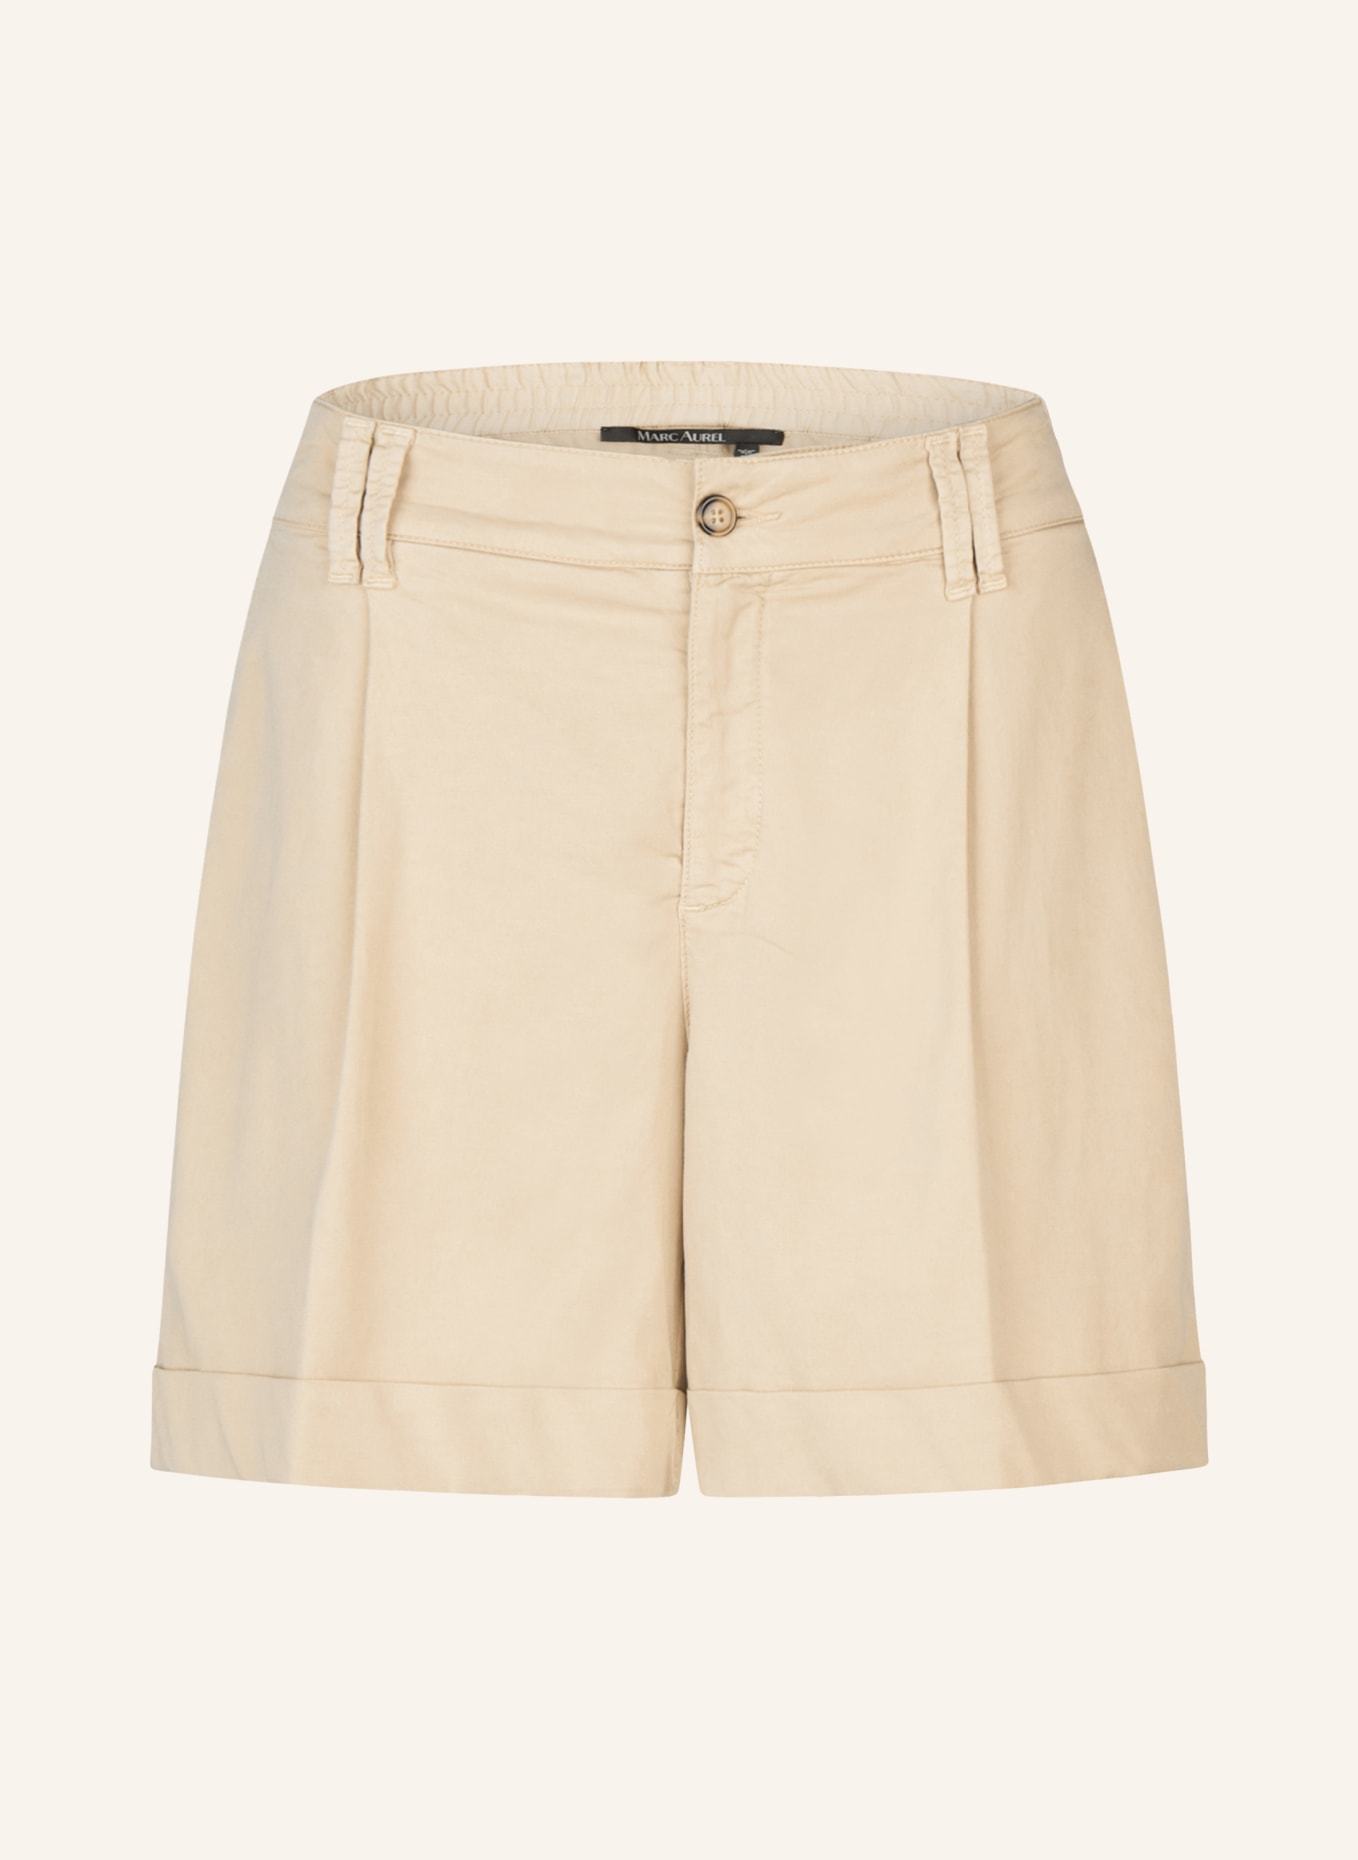 MARC AUREL Shorts, Farbe: BEIGE (Bild 1)